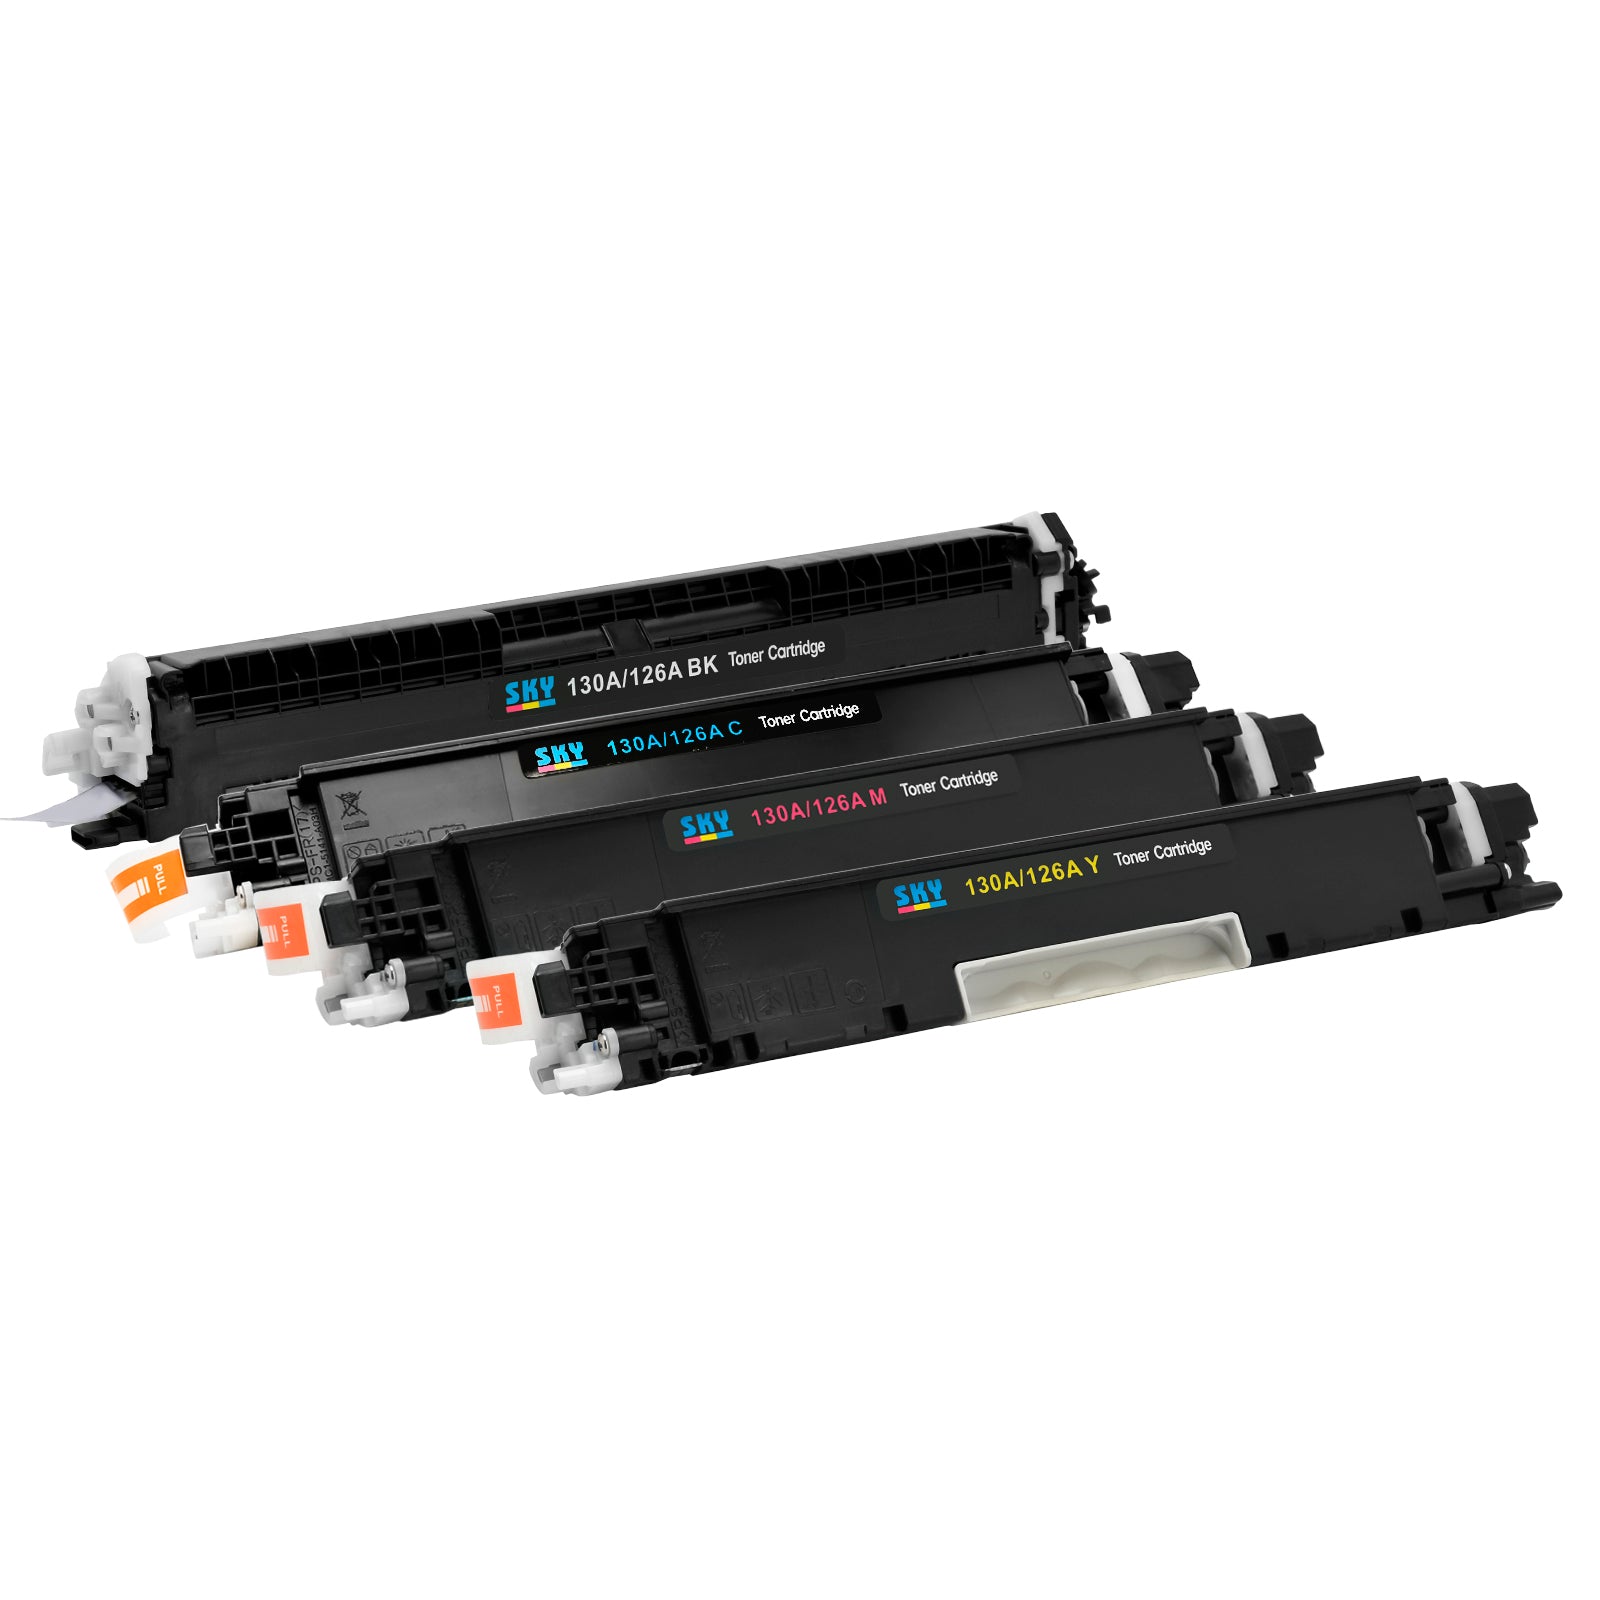 SKY  126A Compatible Toner Cartridges for HP Colour LaserJet Pro  M175 CP1025 M275